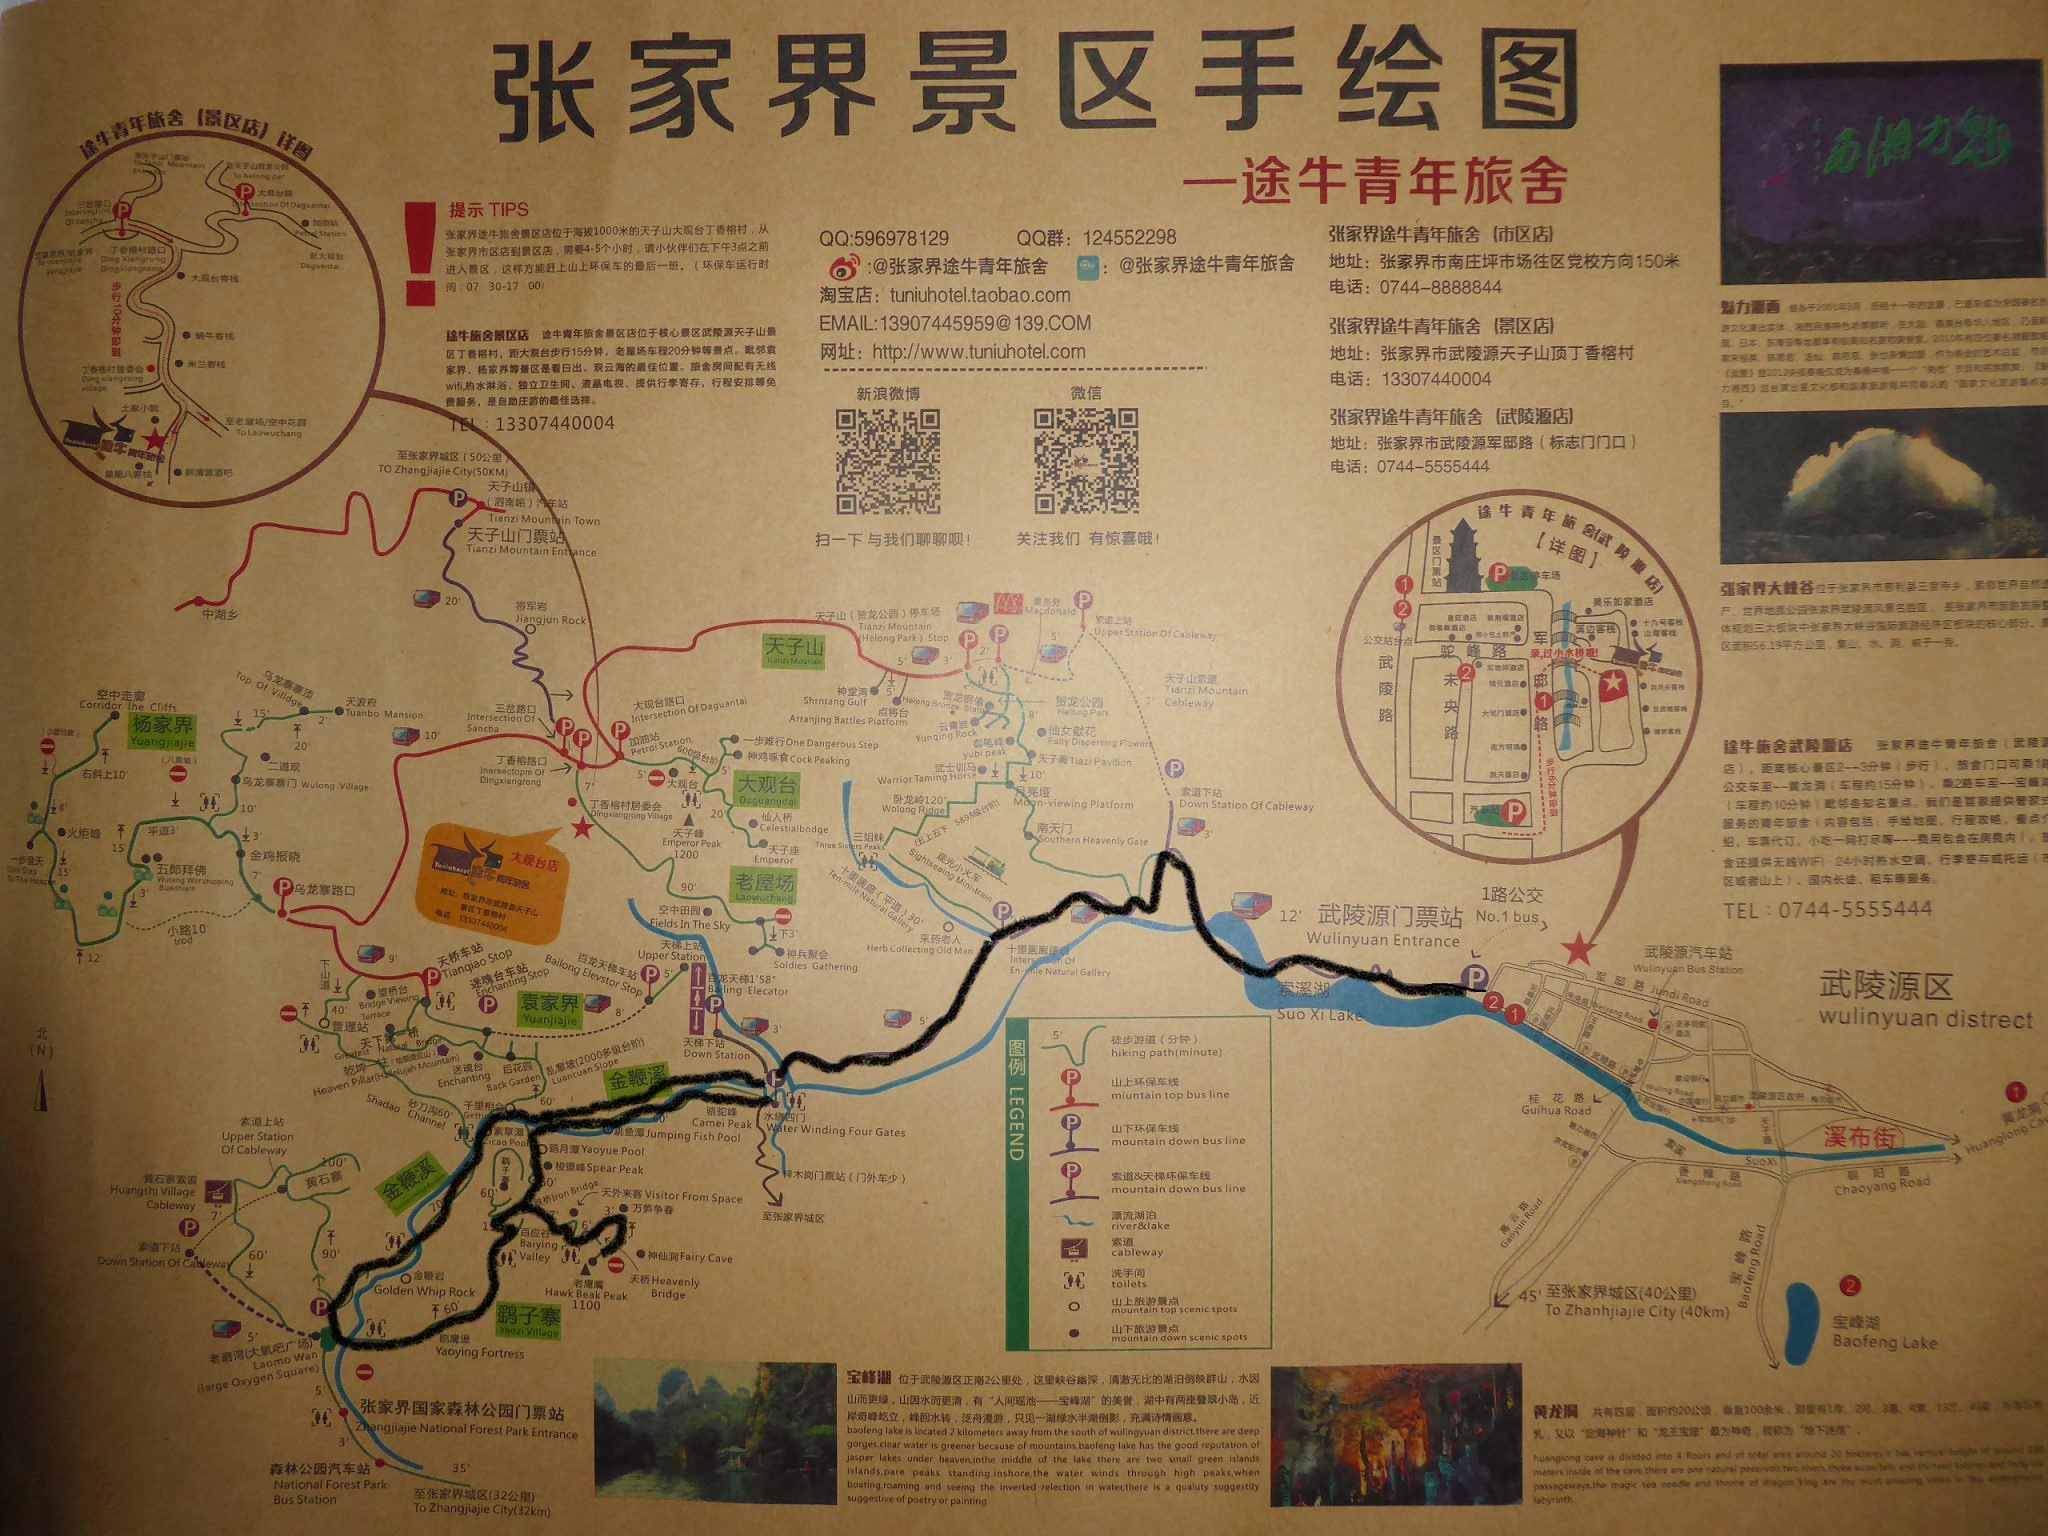 P.N. Zhangjiajie: Puente de Cristal, Paisaje -Hunan, China - Forum China, Taiwan and Mongolia